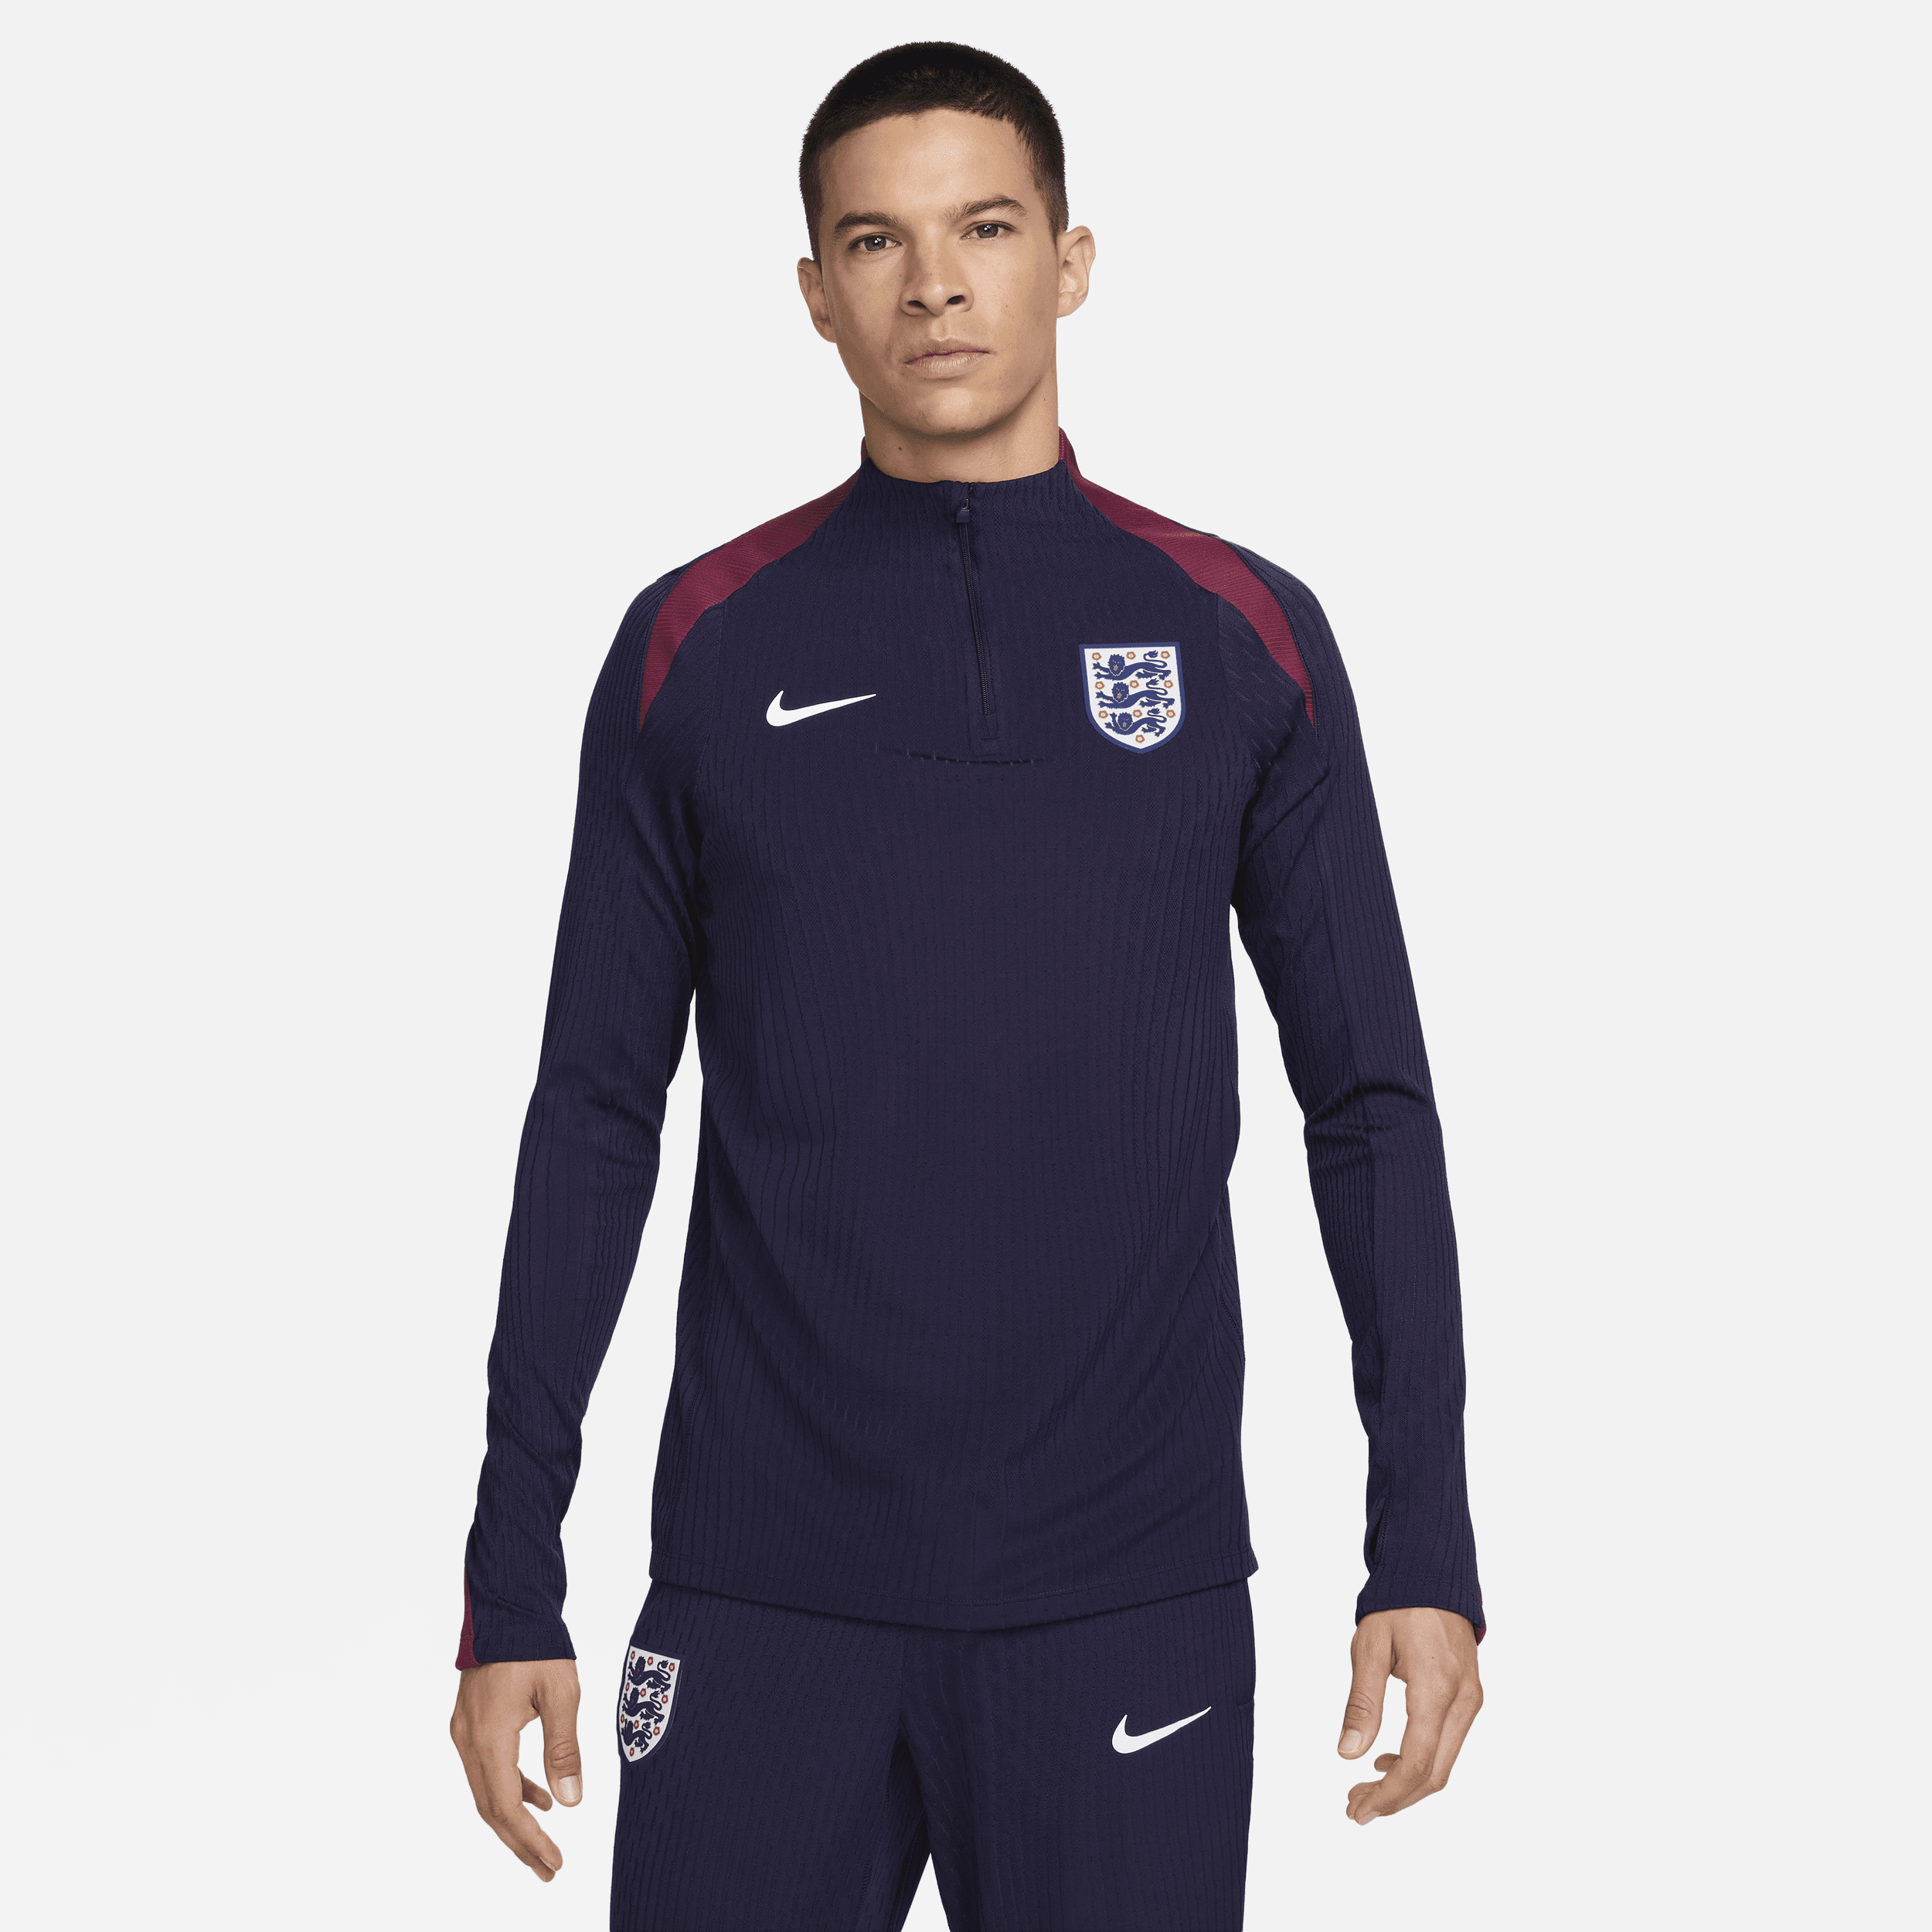 Engeland Strike Elite Nike Dri-FIT ADV knit voetbaltrainingstop voor heren - Paars